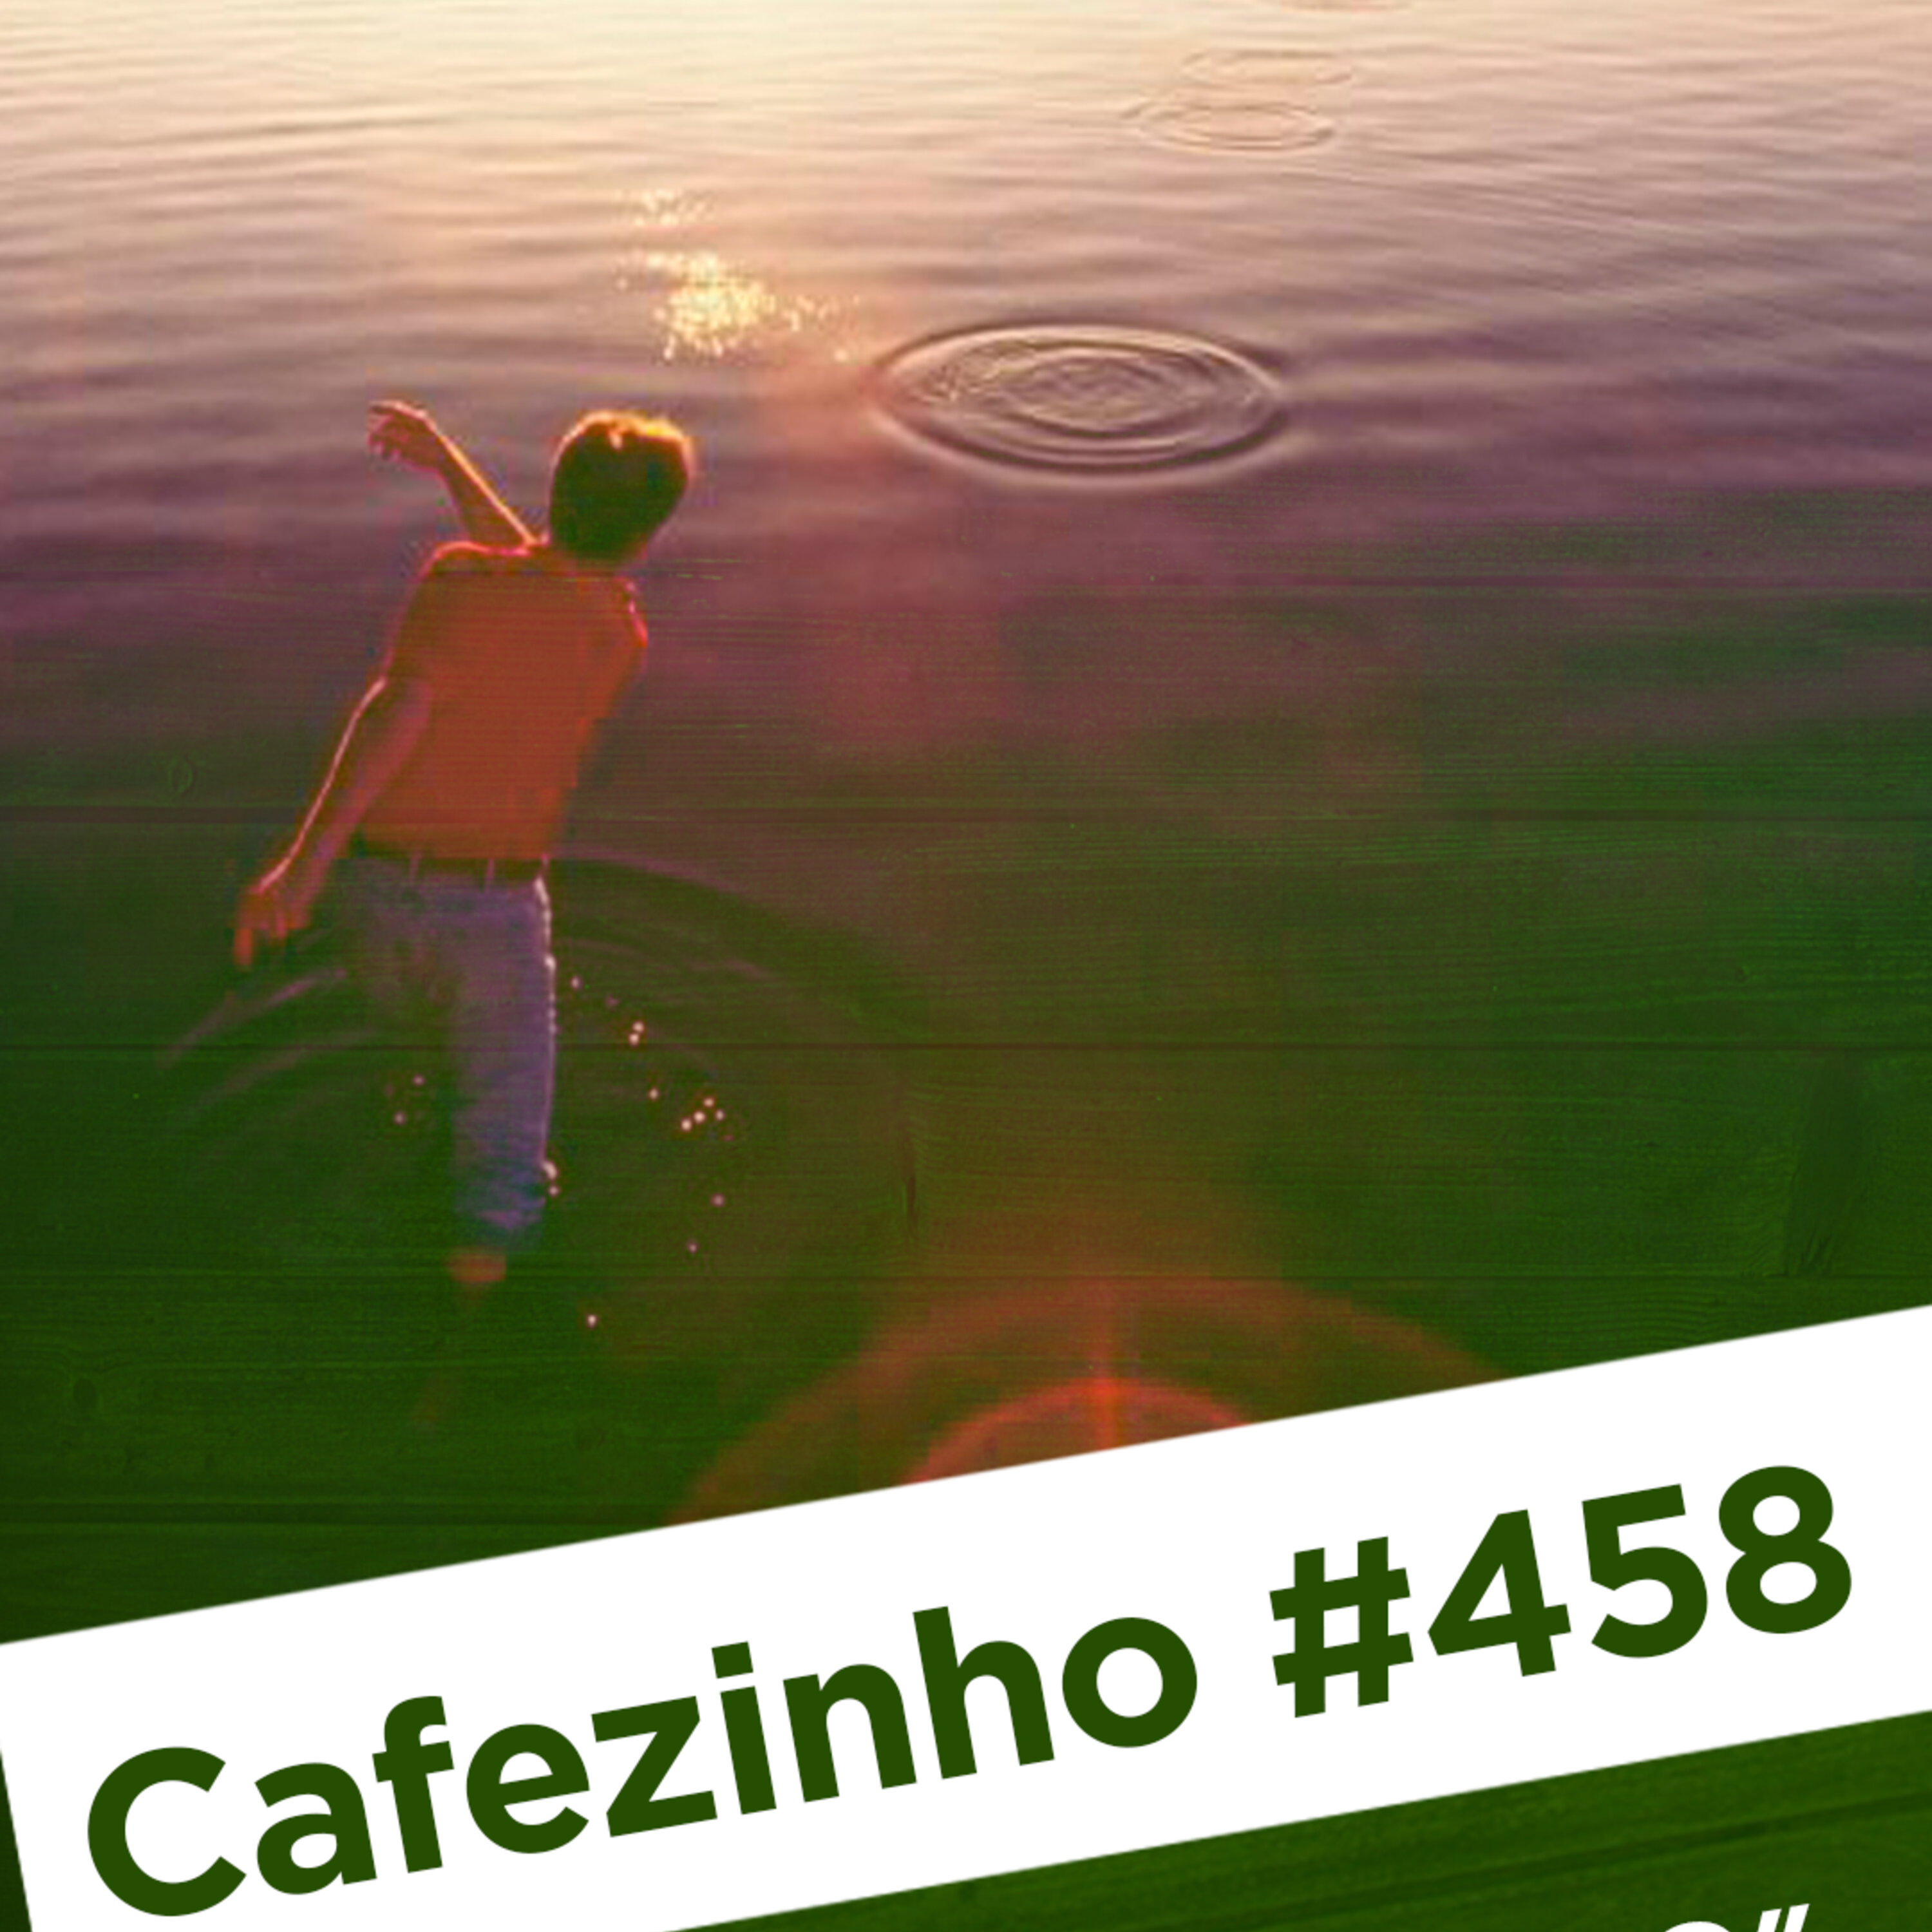 Cafezinho 458 - Pedrinha no lago